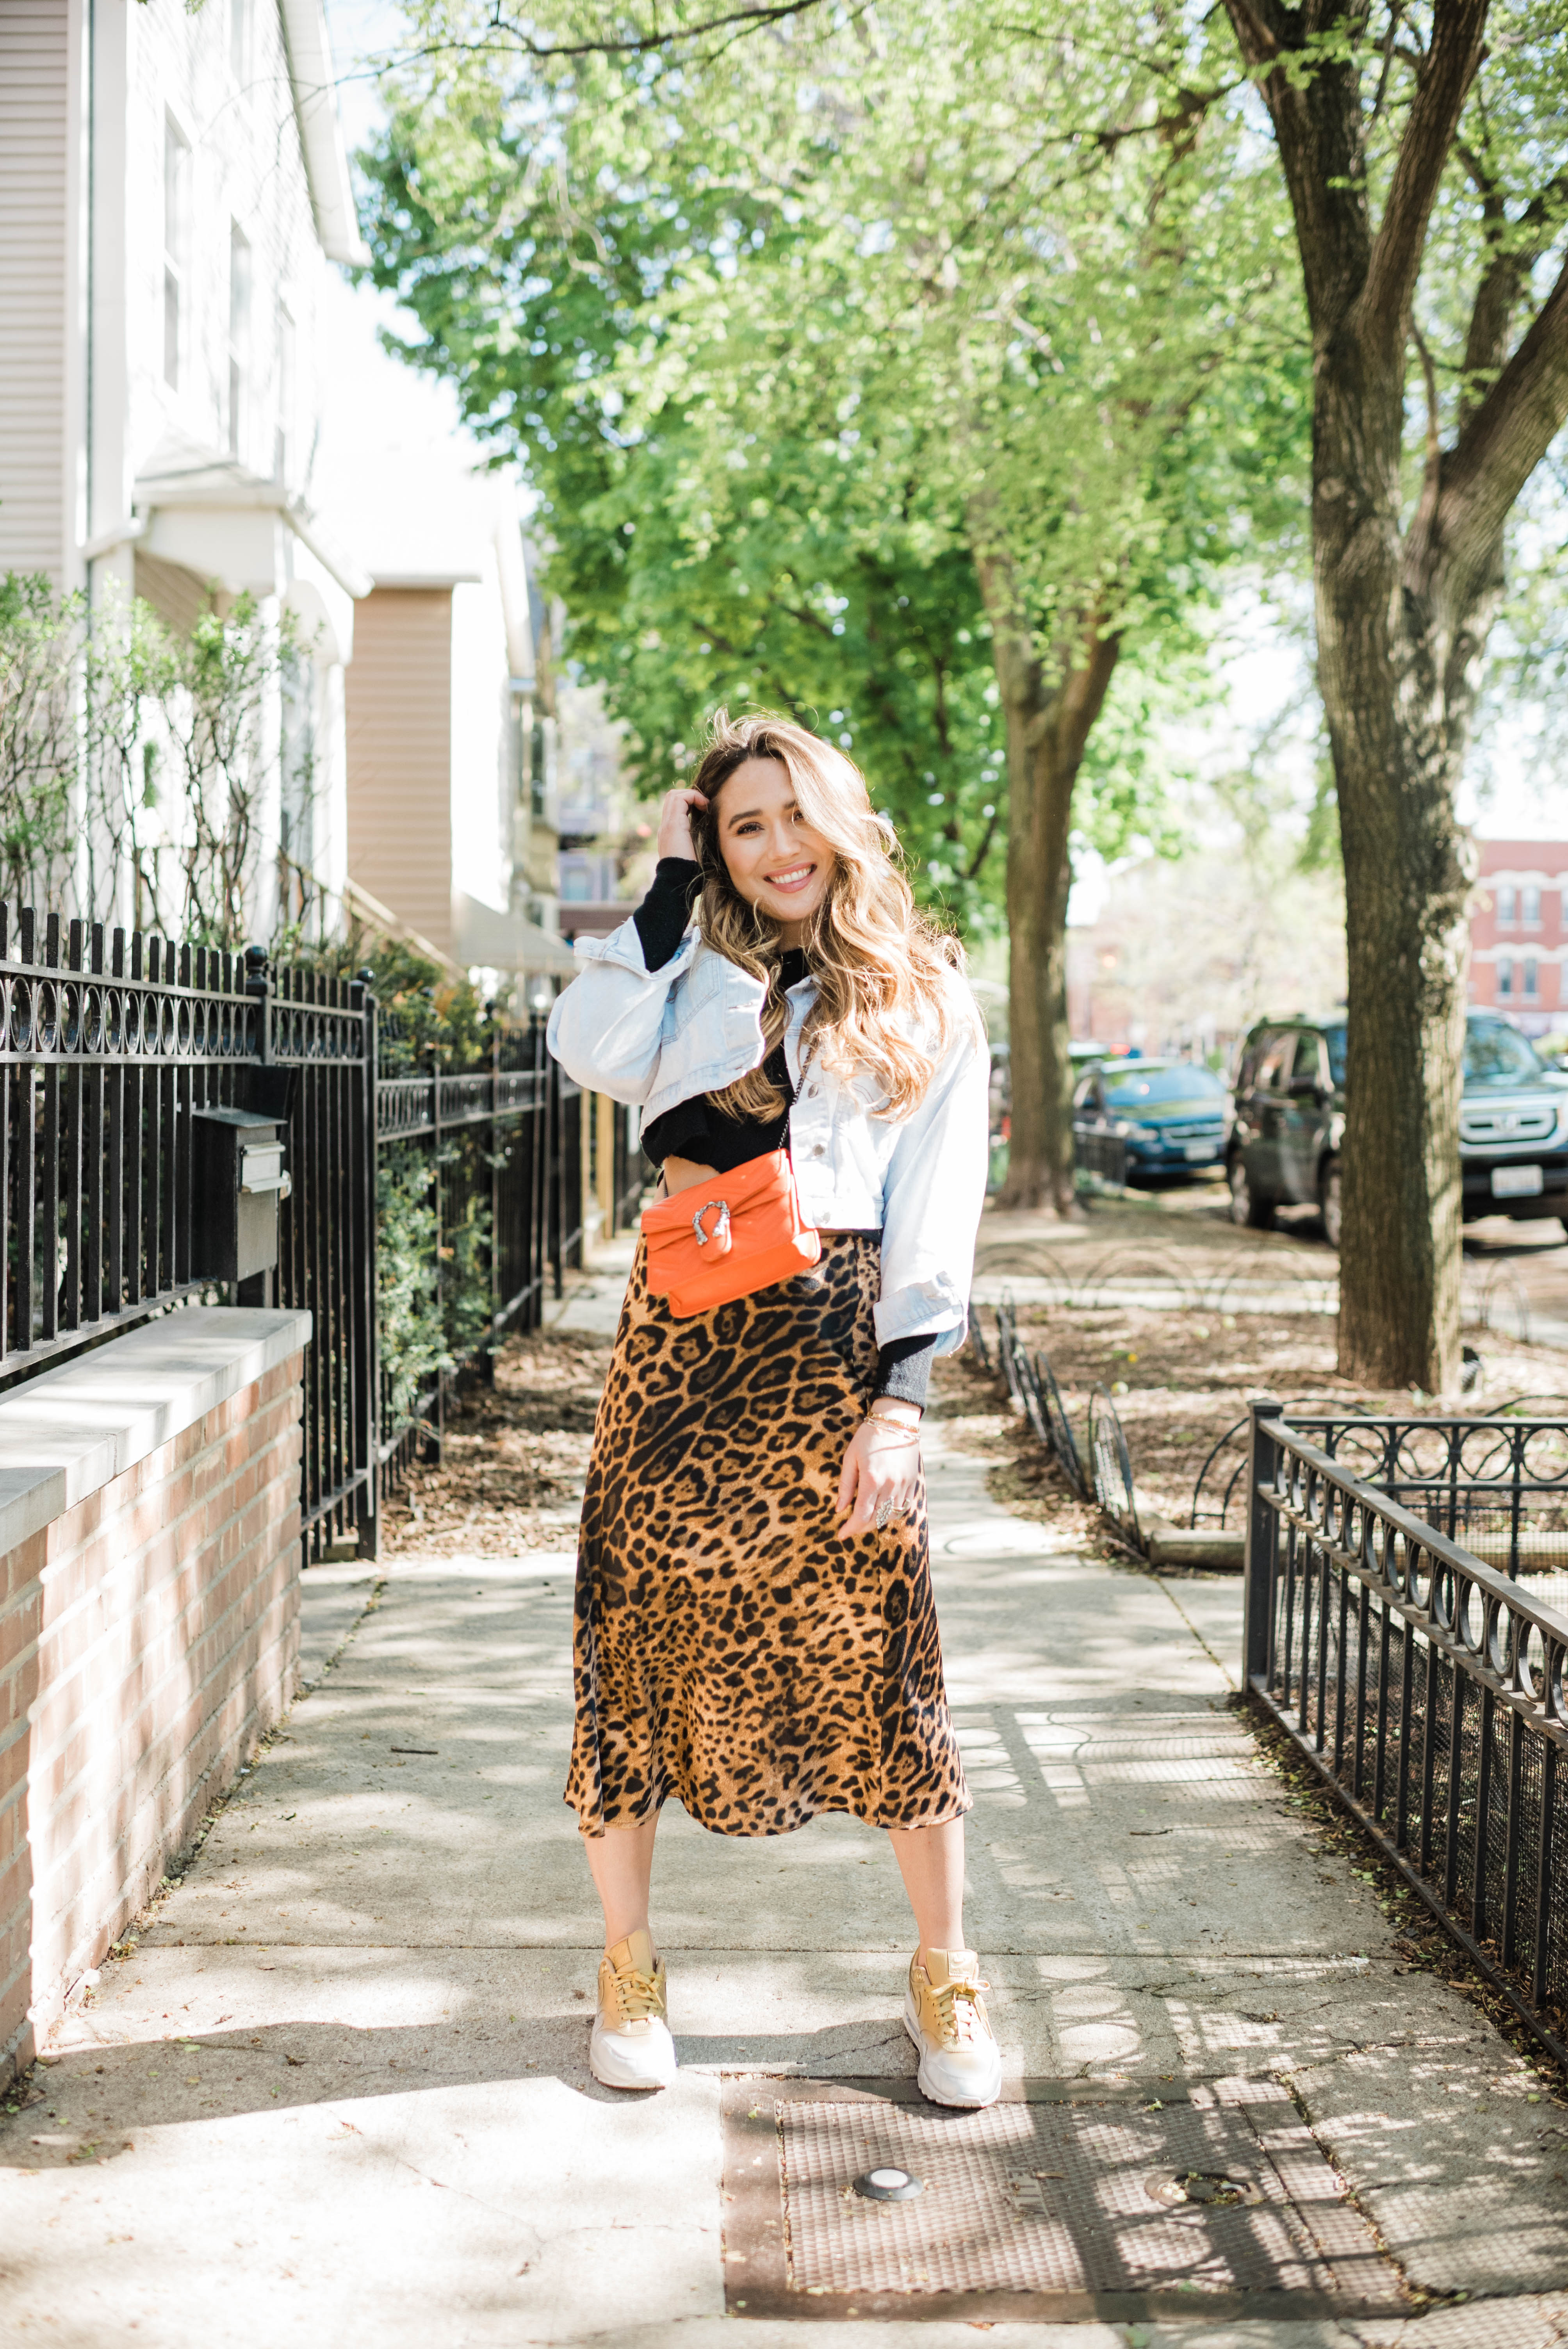 cheetah-skirt-nike-sneakers-jean-jacket-casual-cool-street-style-look